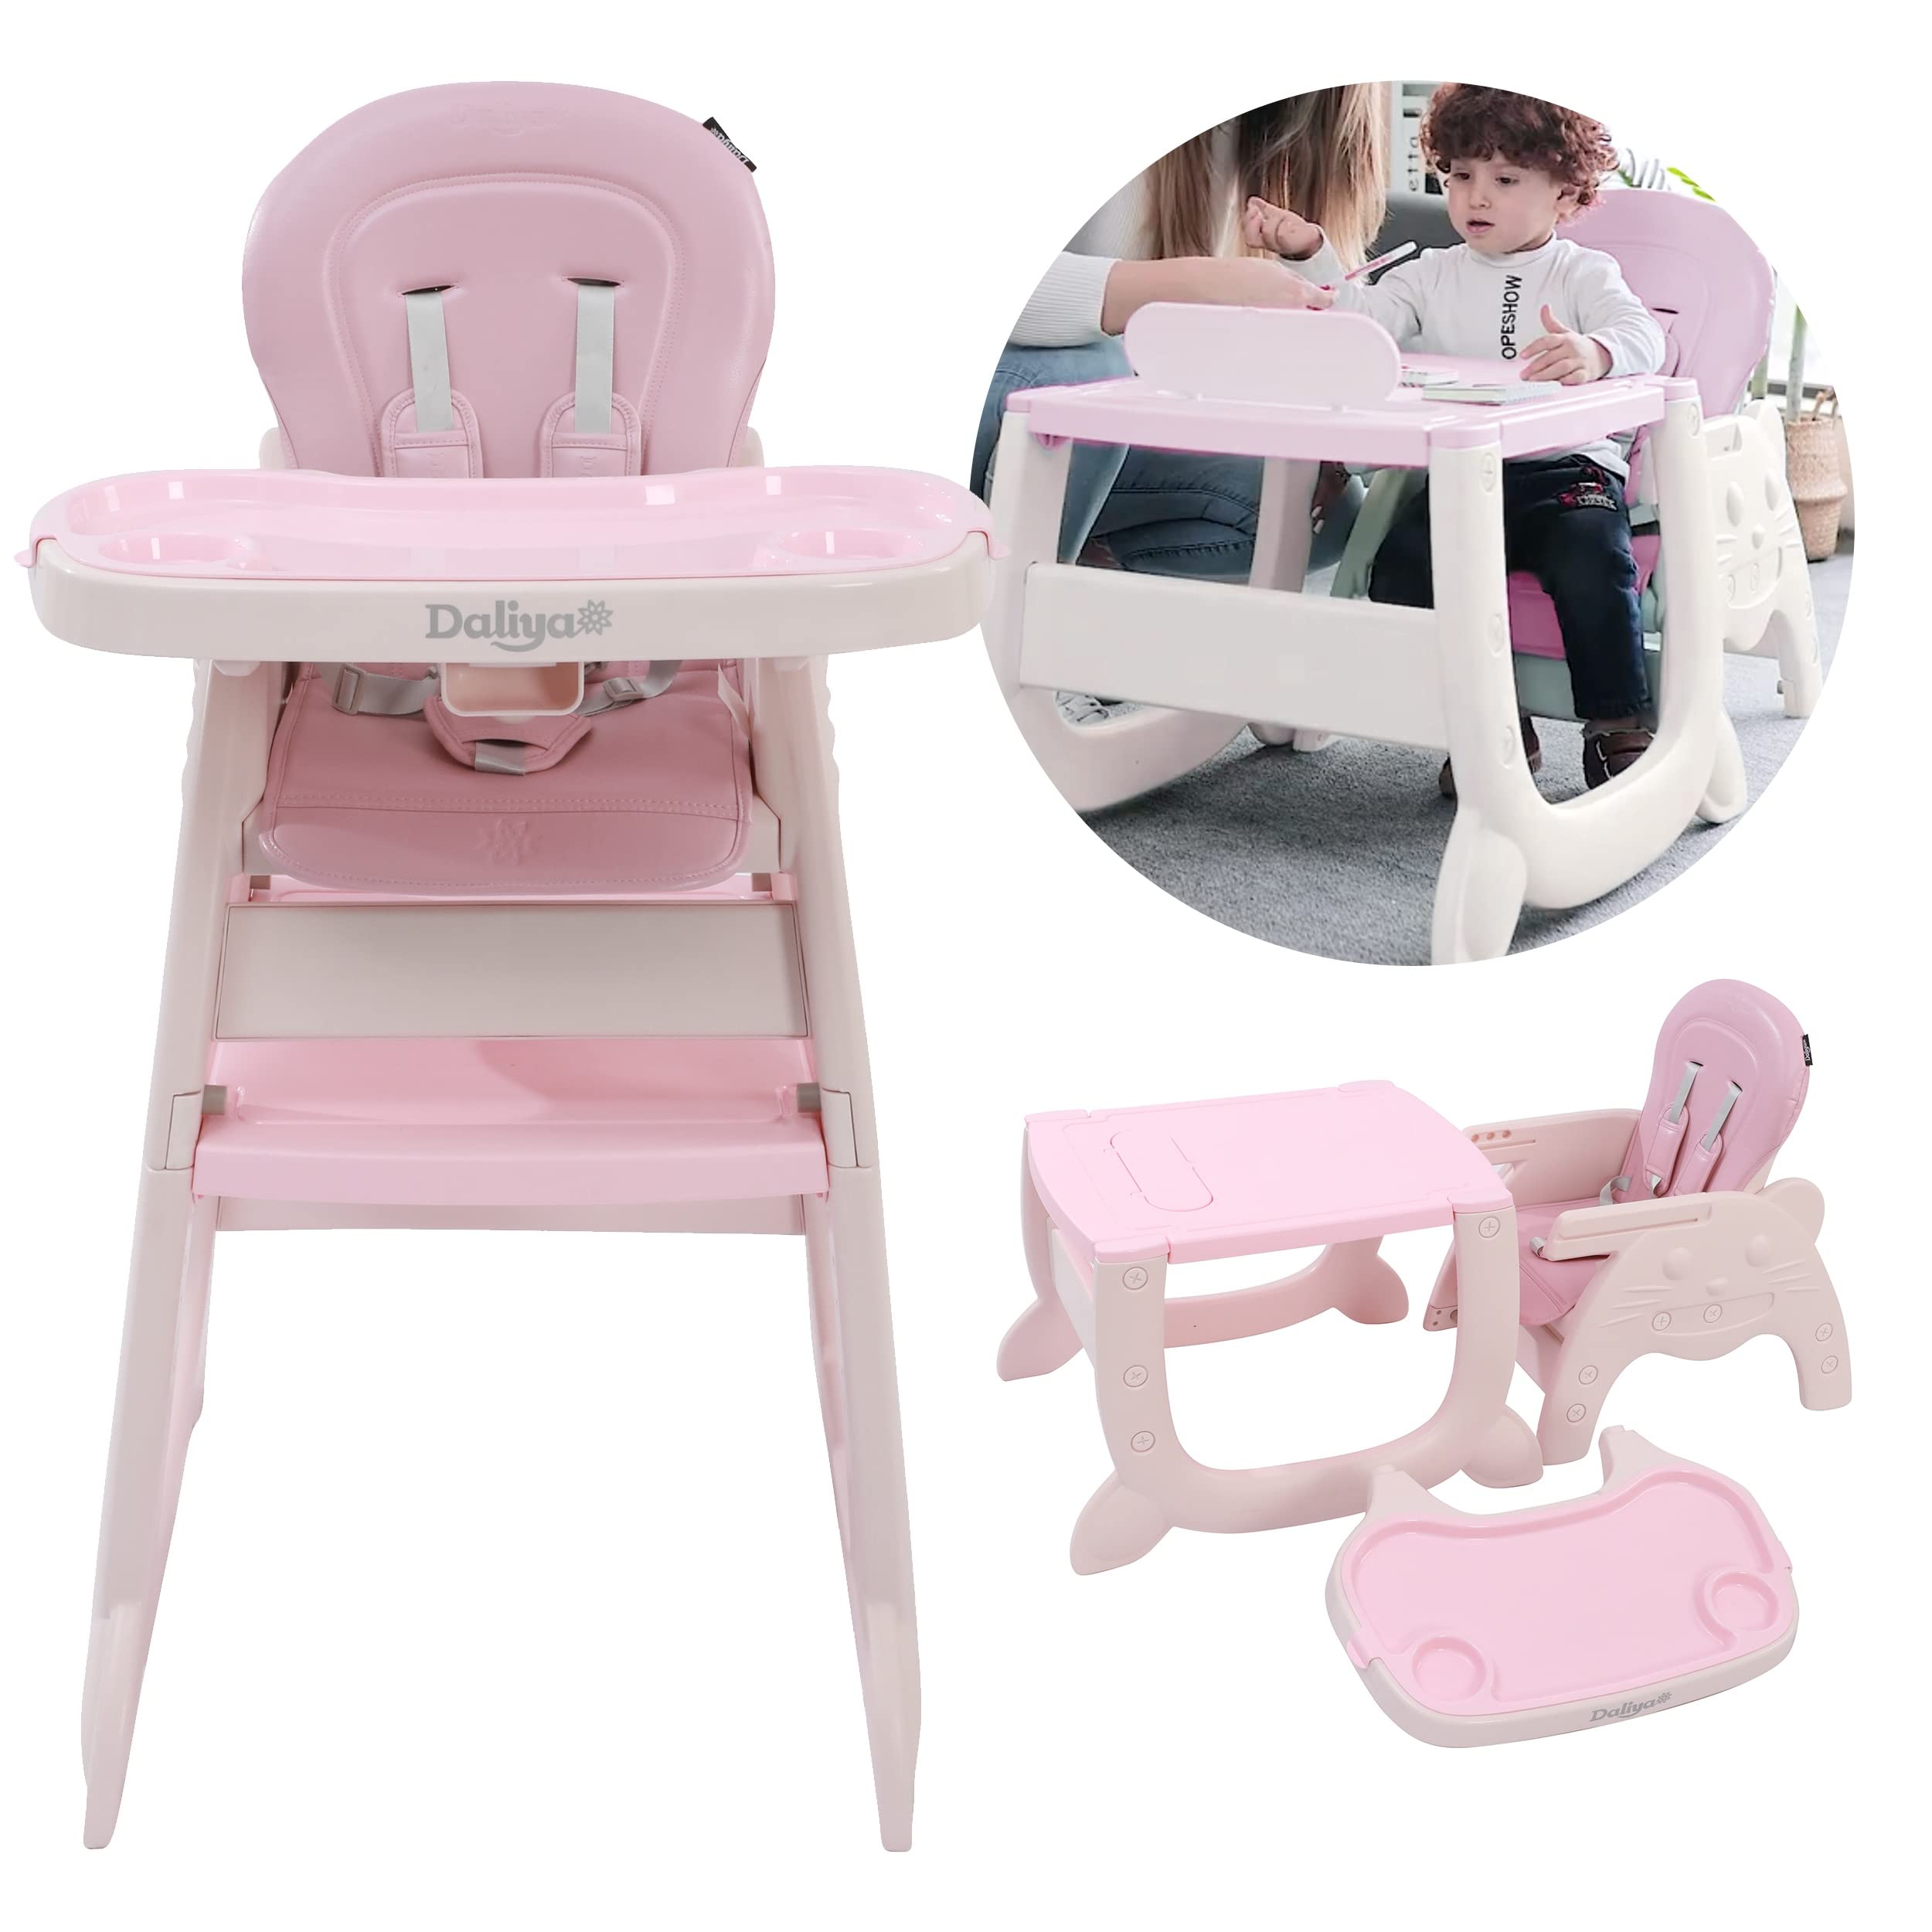 Daliya® Multihok Baby & Kinder Hochstuhl Multifunktion - Mal und Spieltisch mit Stauraum - Esstisch mit extra Tablet Kinderstuhl Kindertisch Babystuhl Kinderhochstuhl (Rosa)